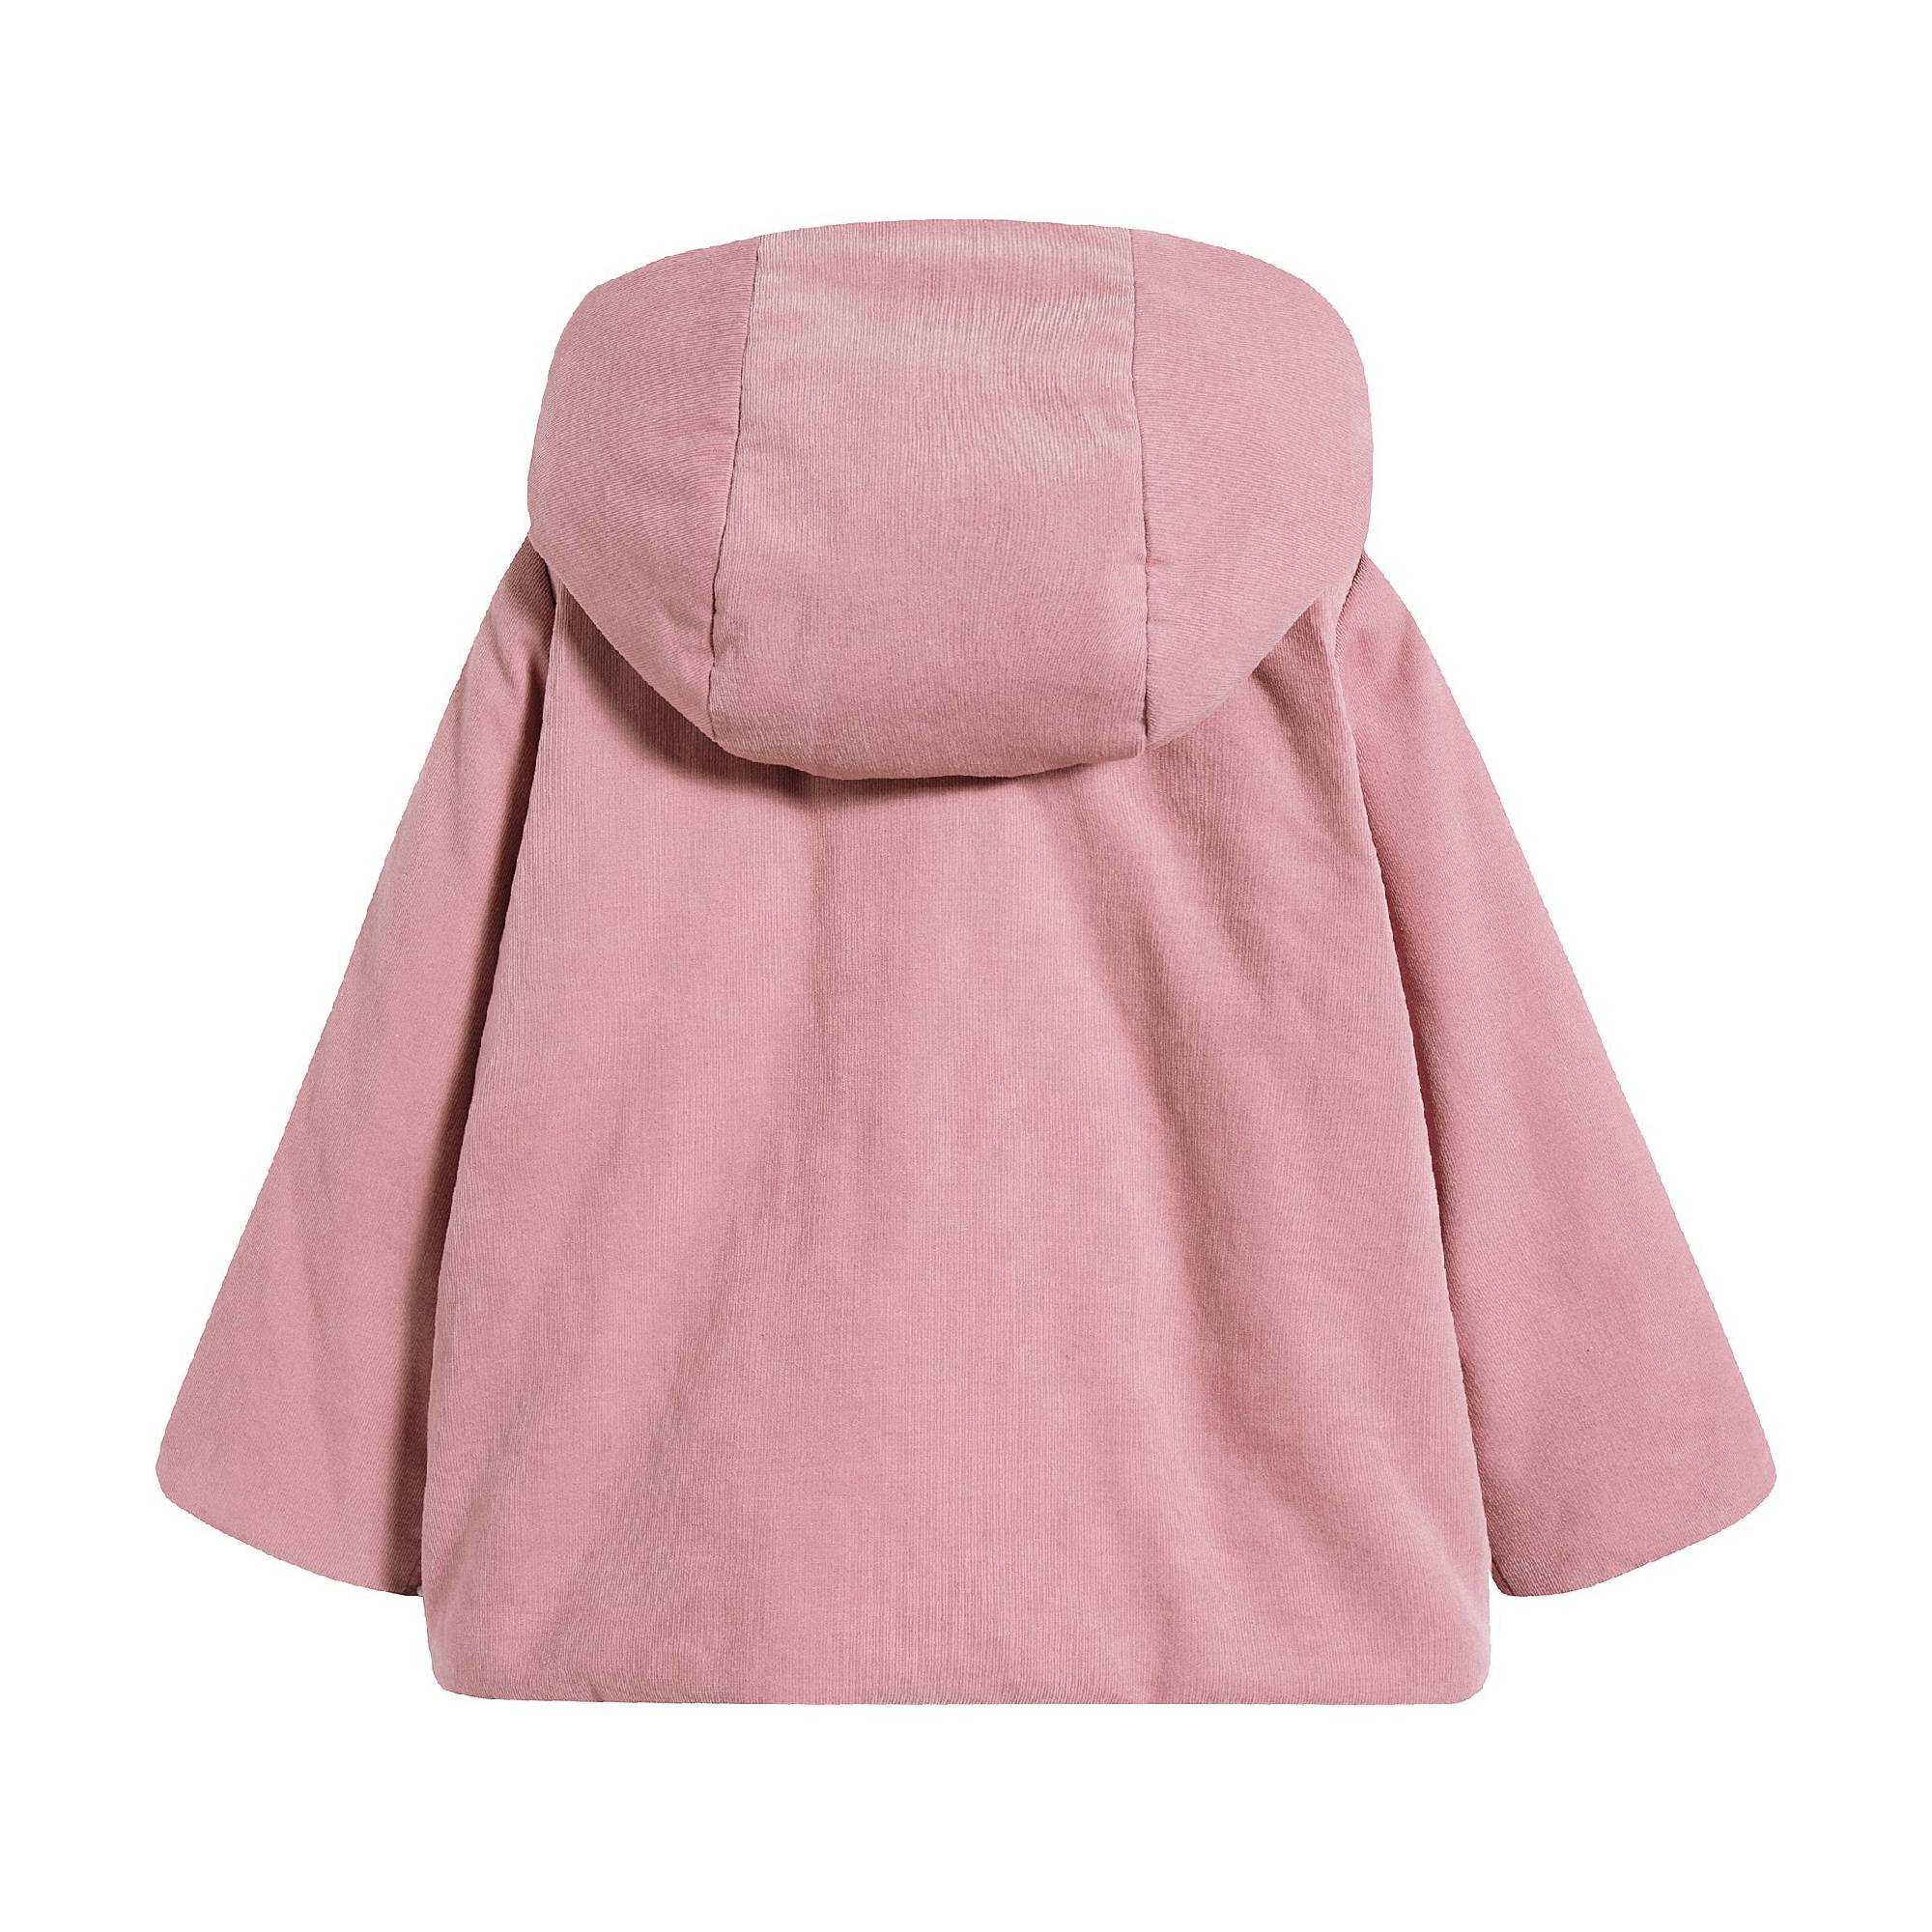 Baby Girls Powder Pink Cotton Coat